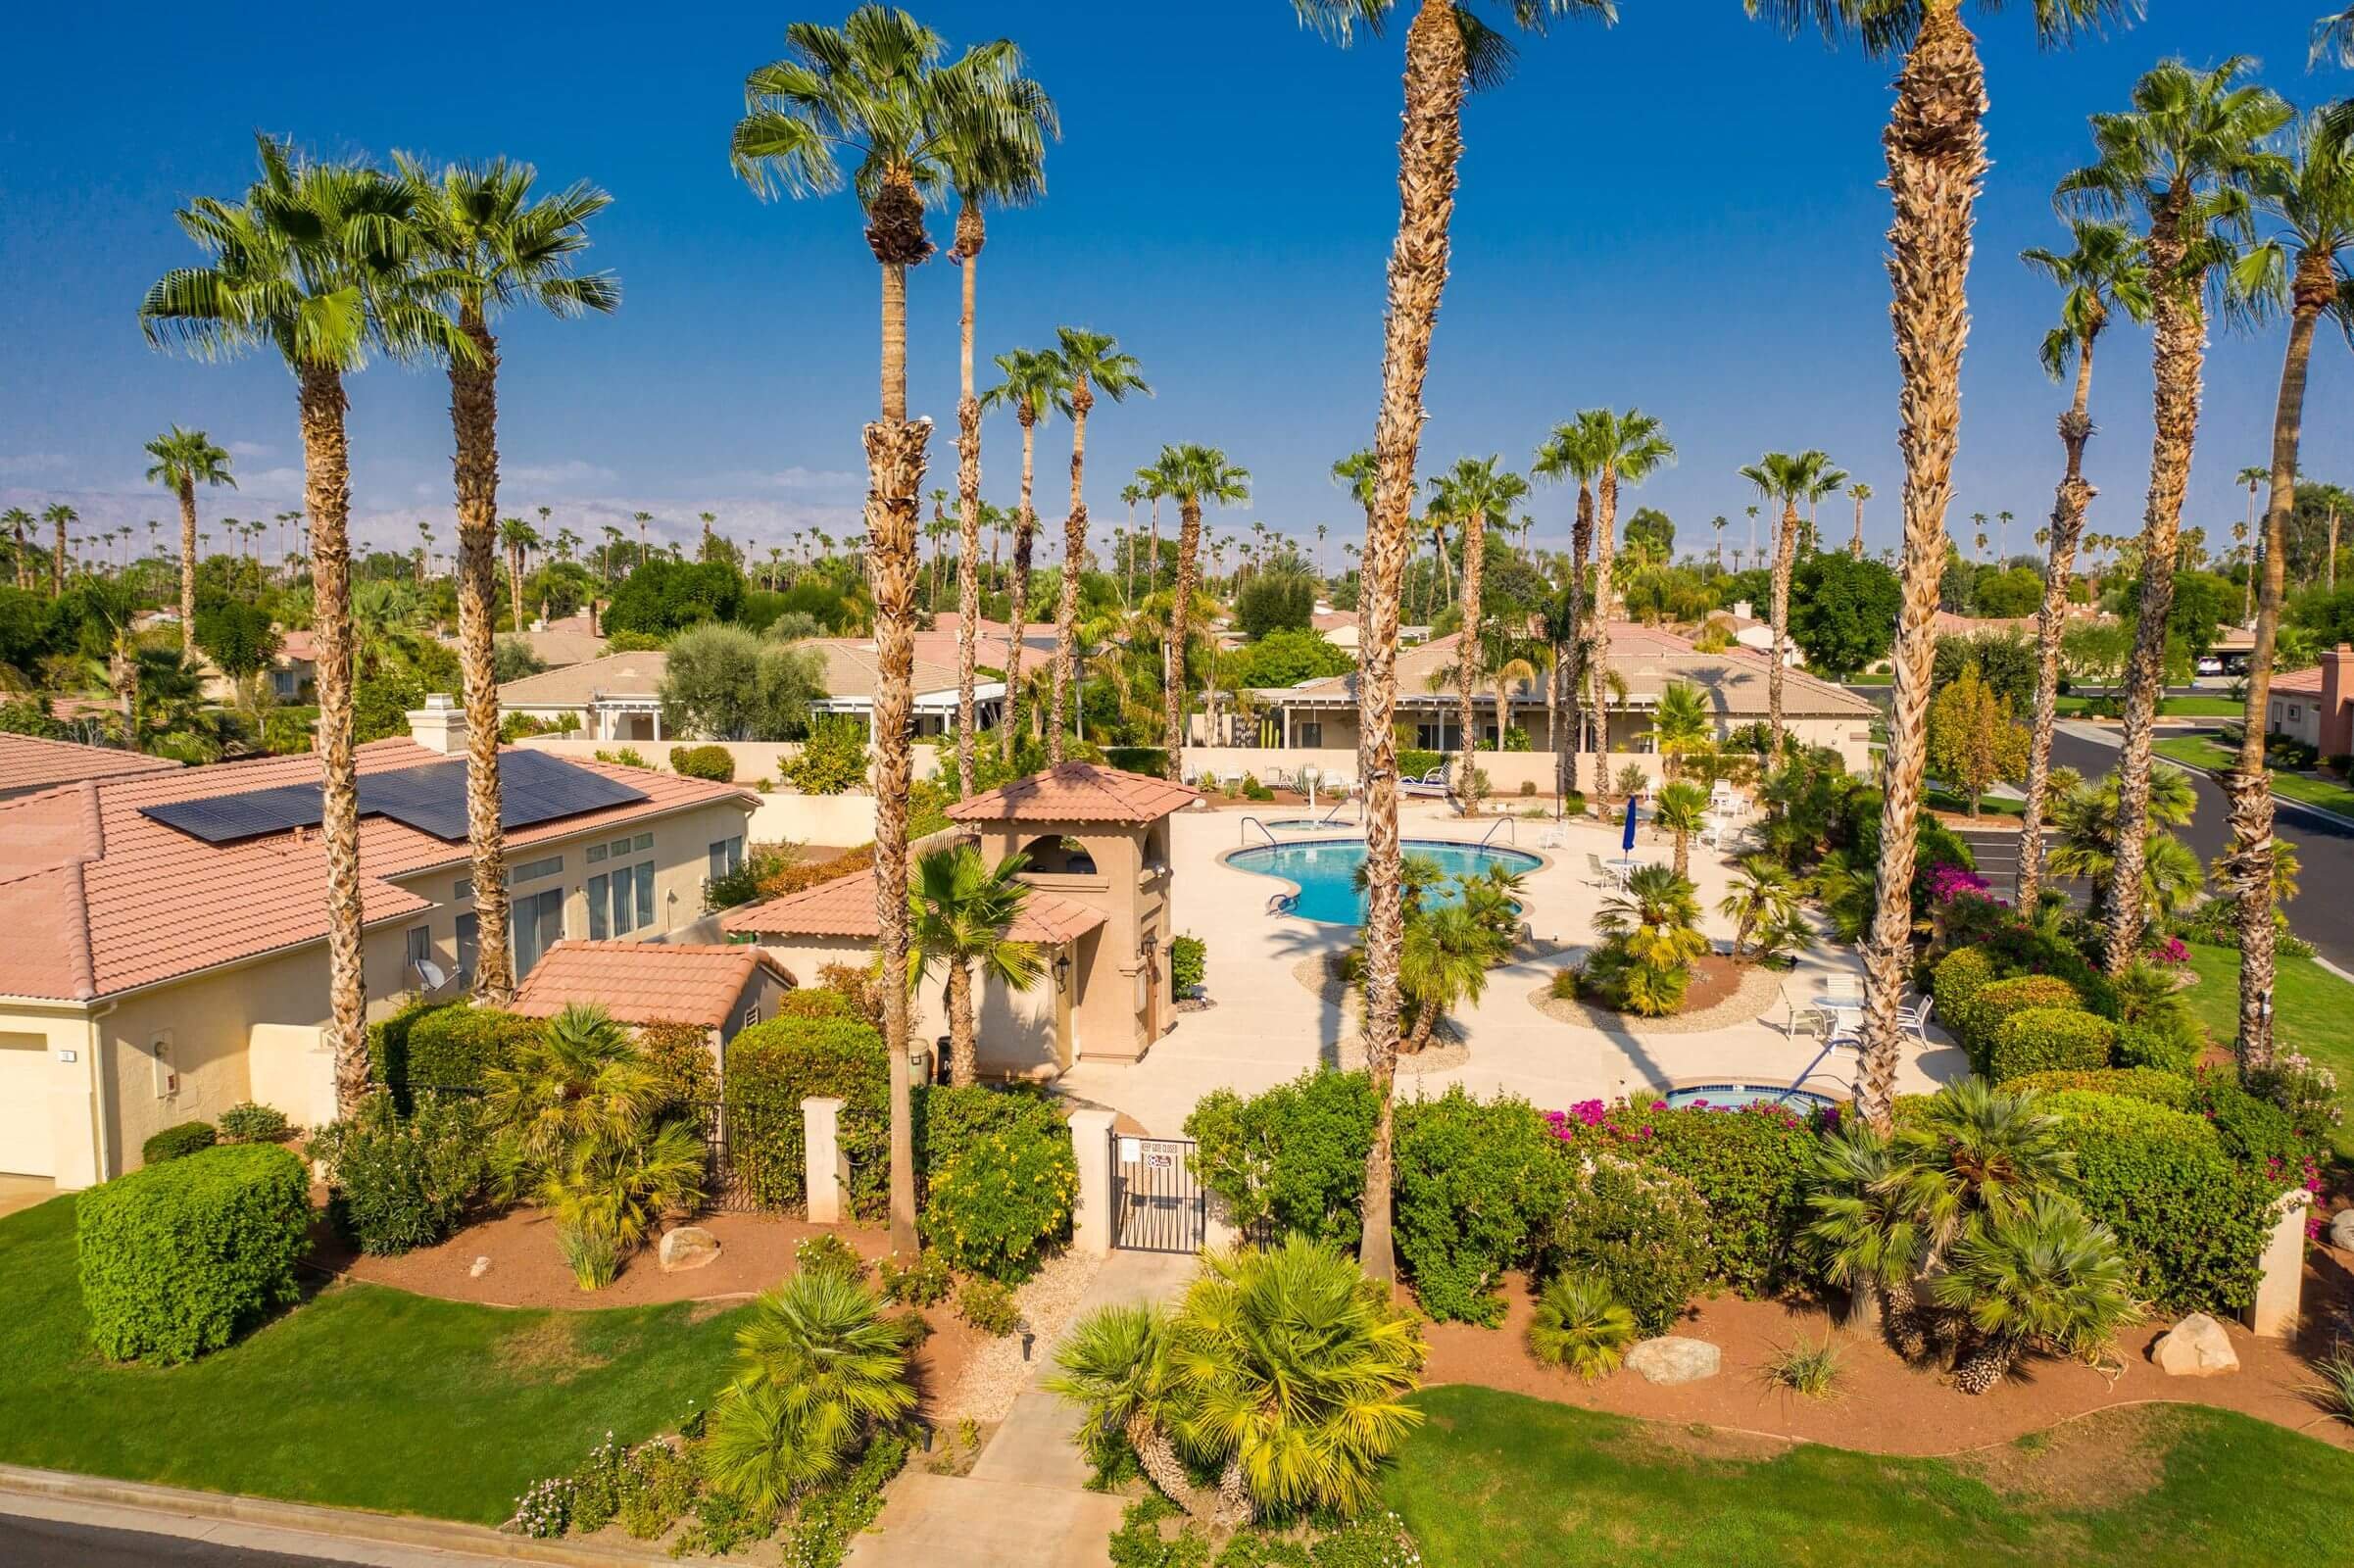 The Estates at Rancho Mirage HOA